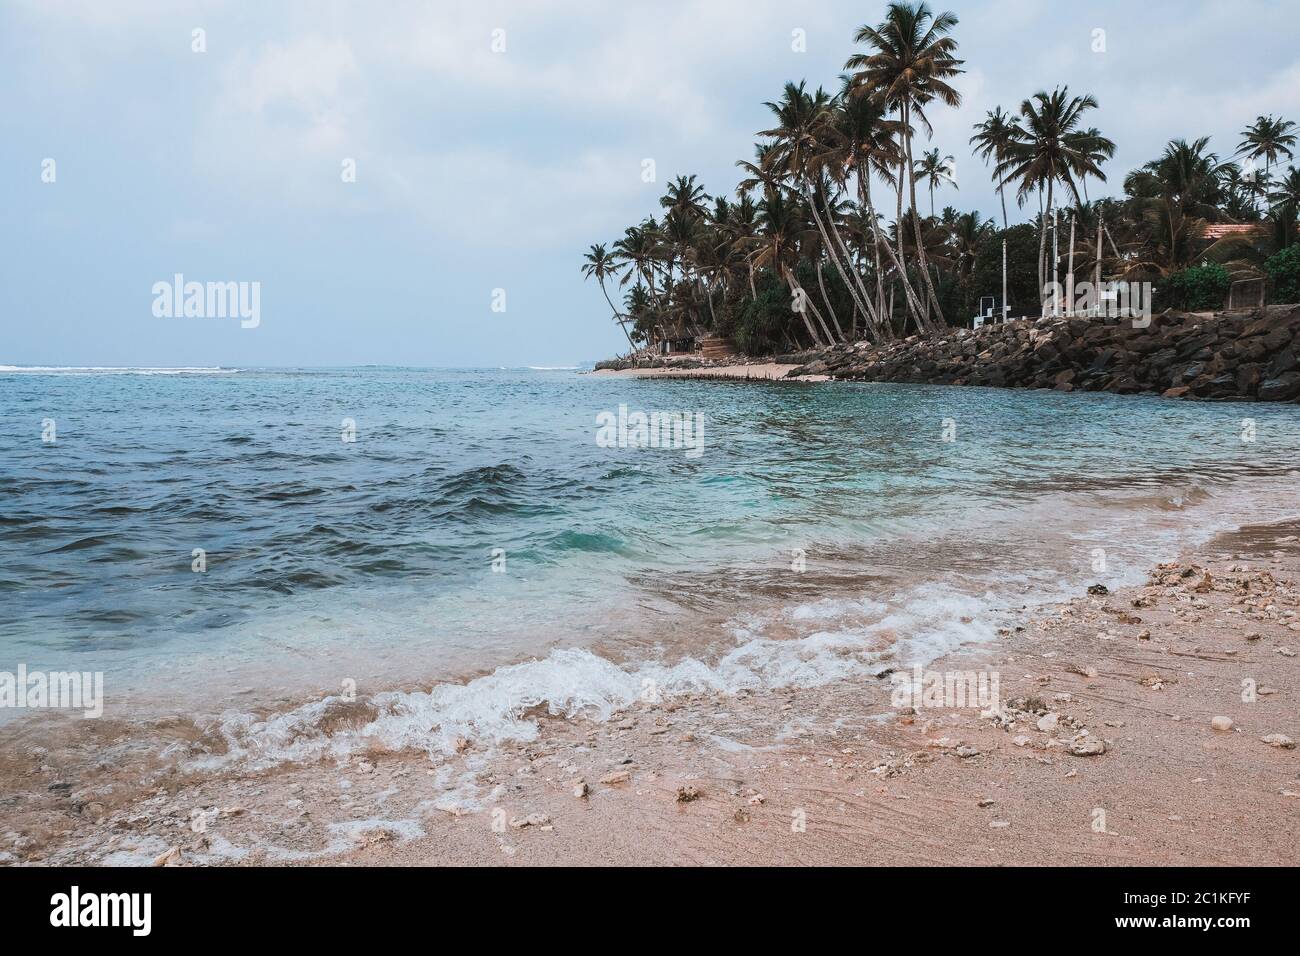 Wunderschöner und ruhiger tropischer Strand voller toter Korallenriffstücke. Ökosystem durch globale Erwärmung beschädigt. Secret Madiha Strand in Sri Lanka. Stockfoto